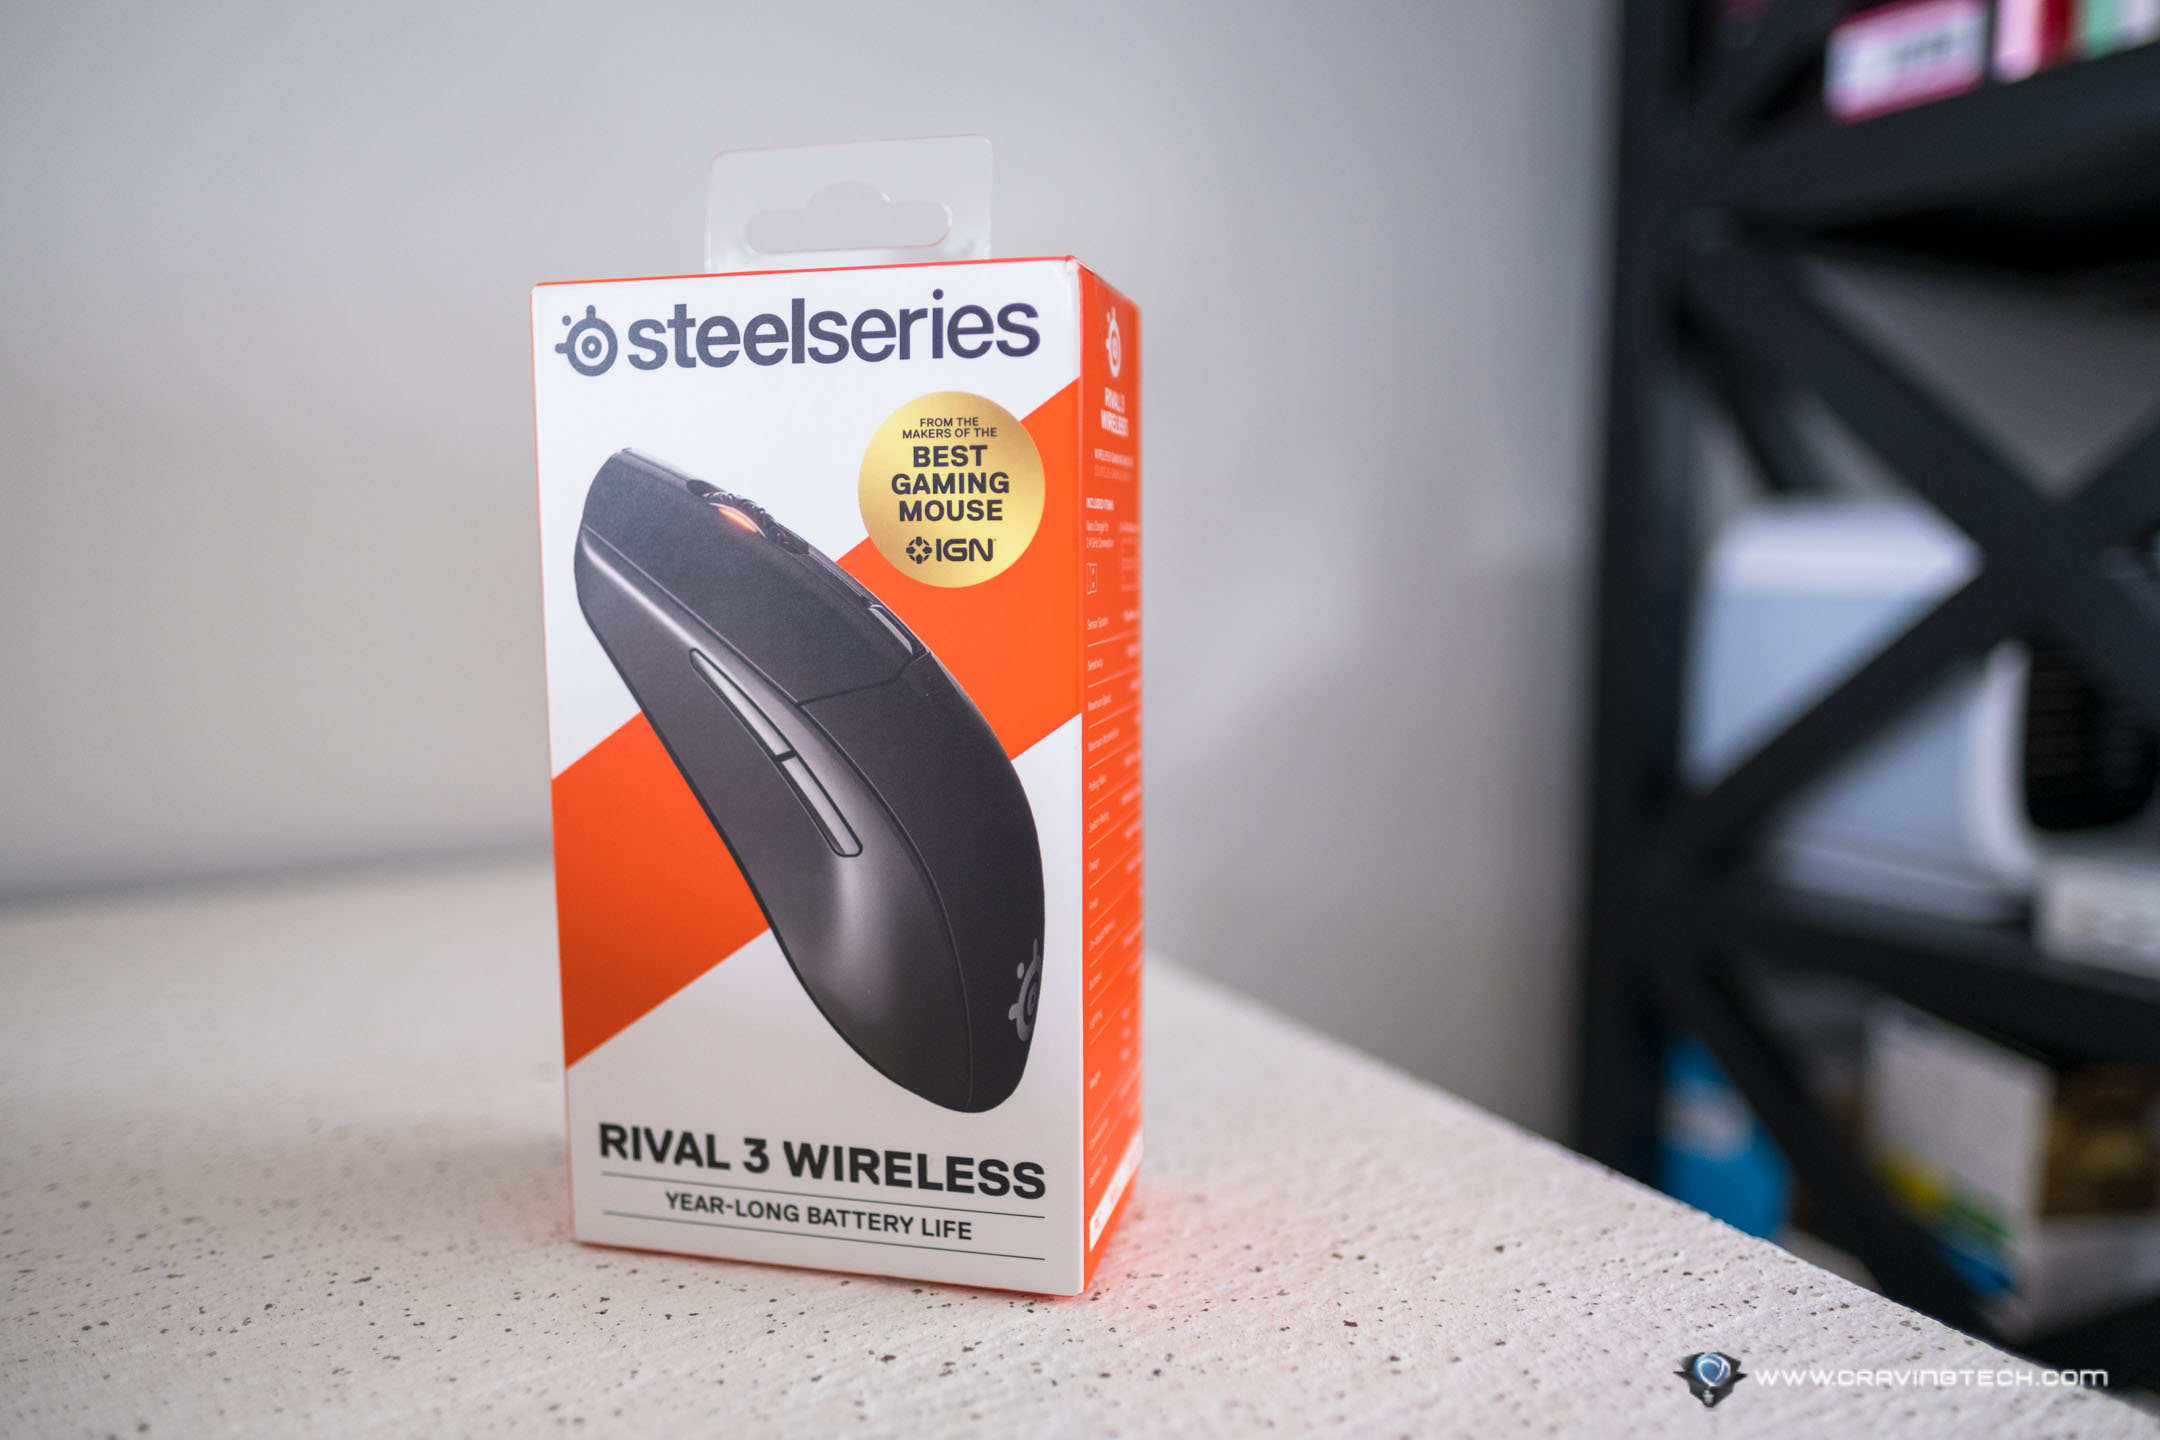 Steelseries rival 3 wireless